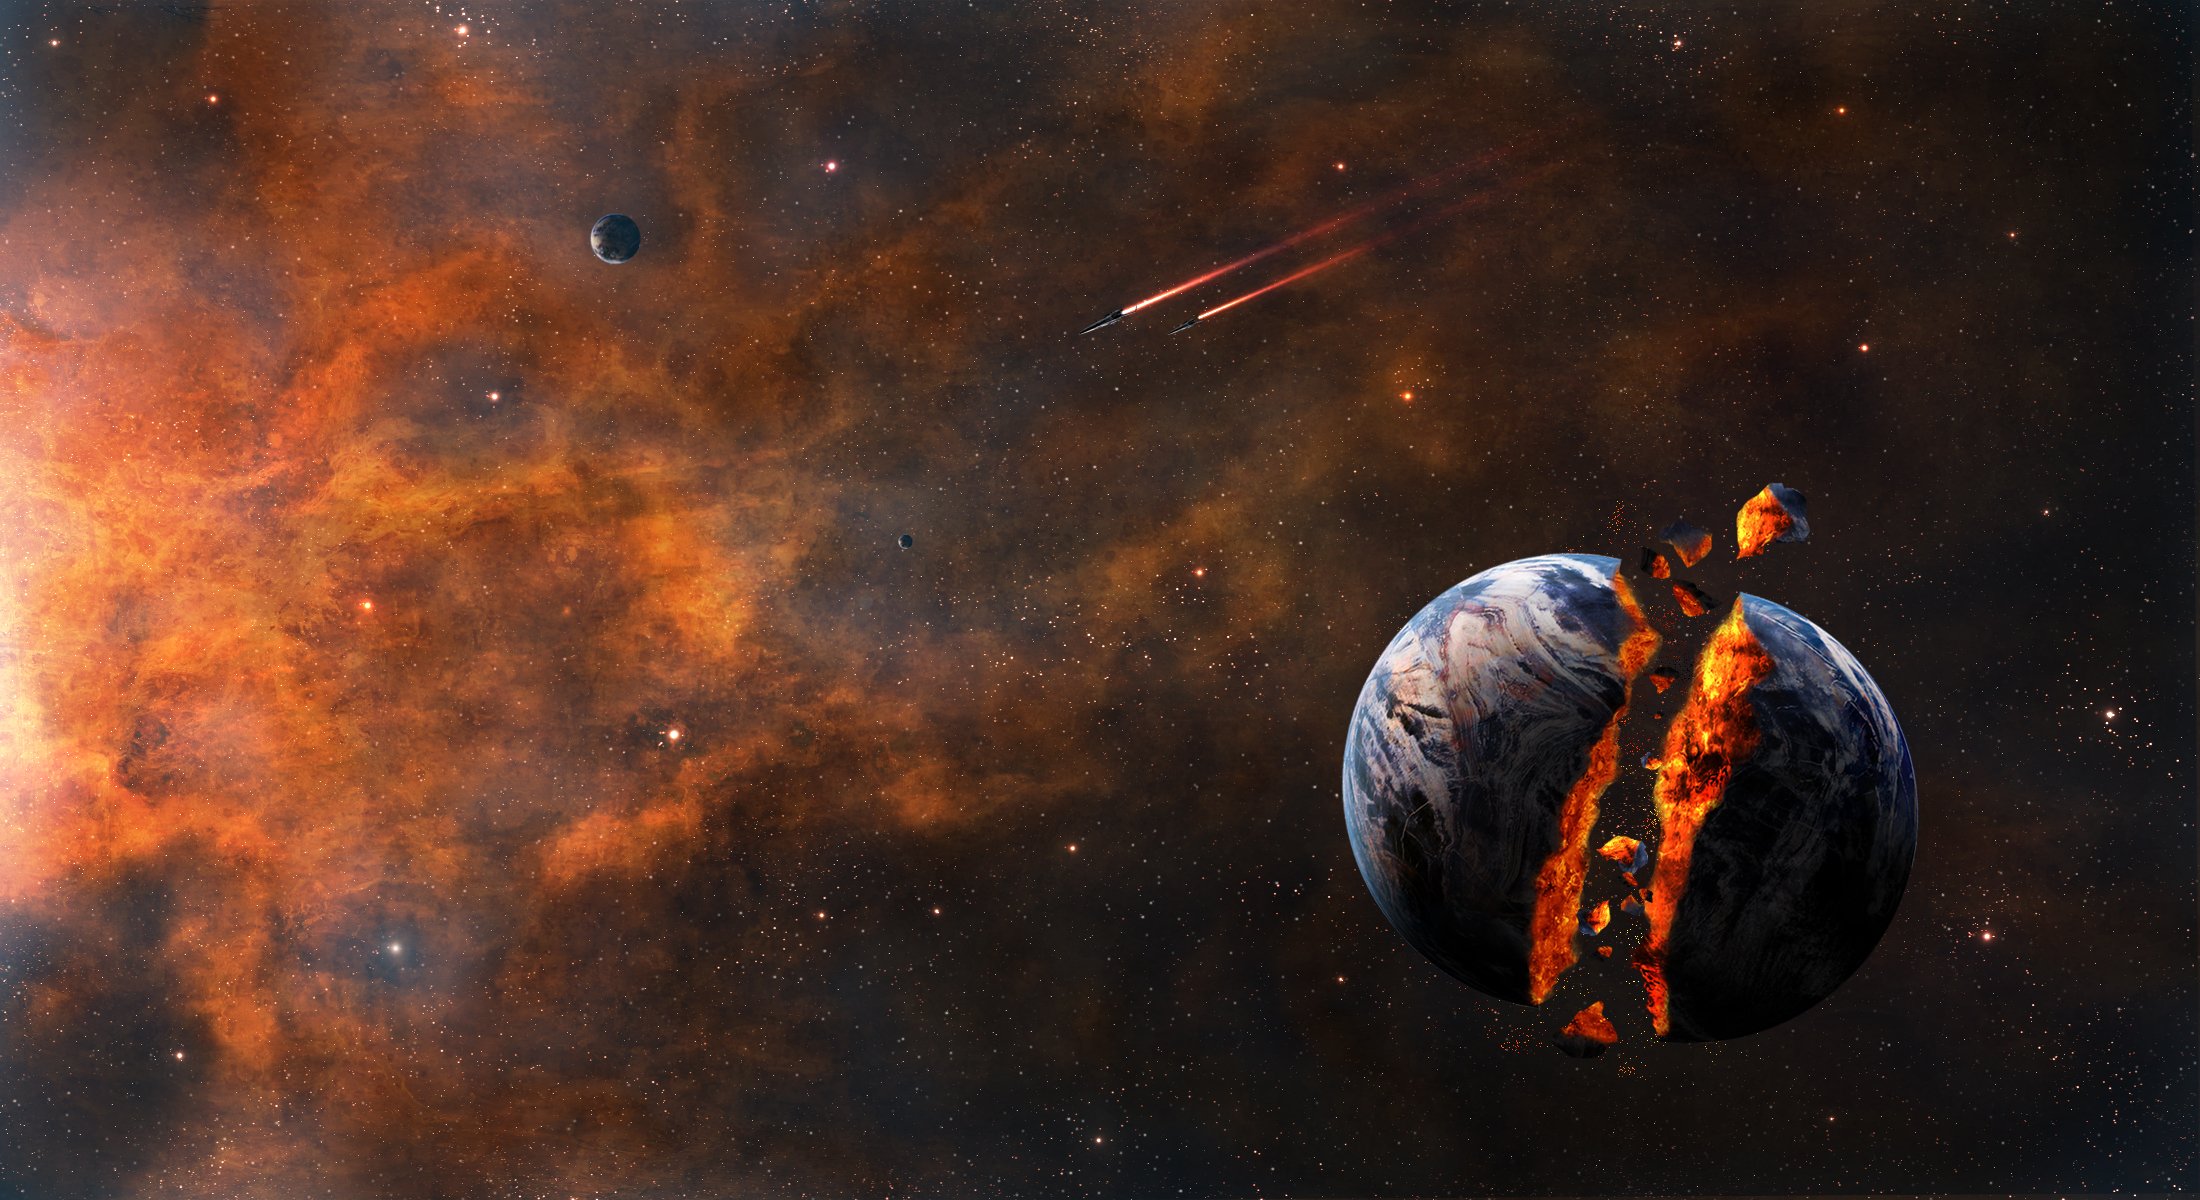 Обои Взрывающаяся планета картинки на рабочий стол на тему Космос - скачать скачать